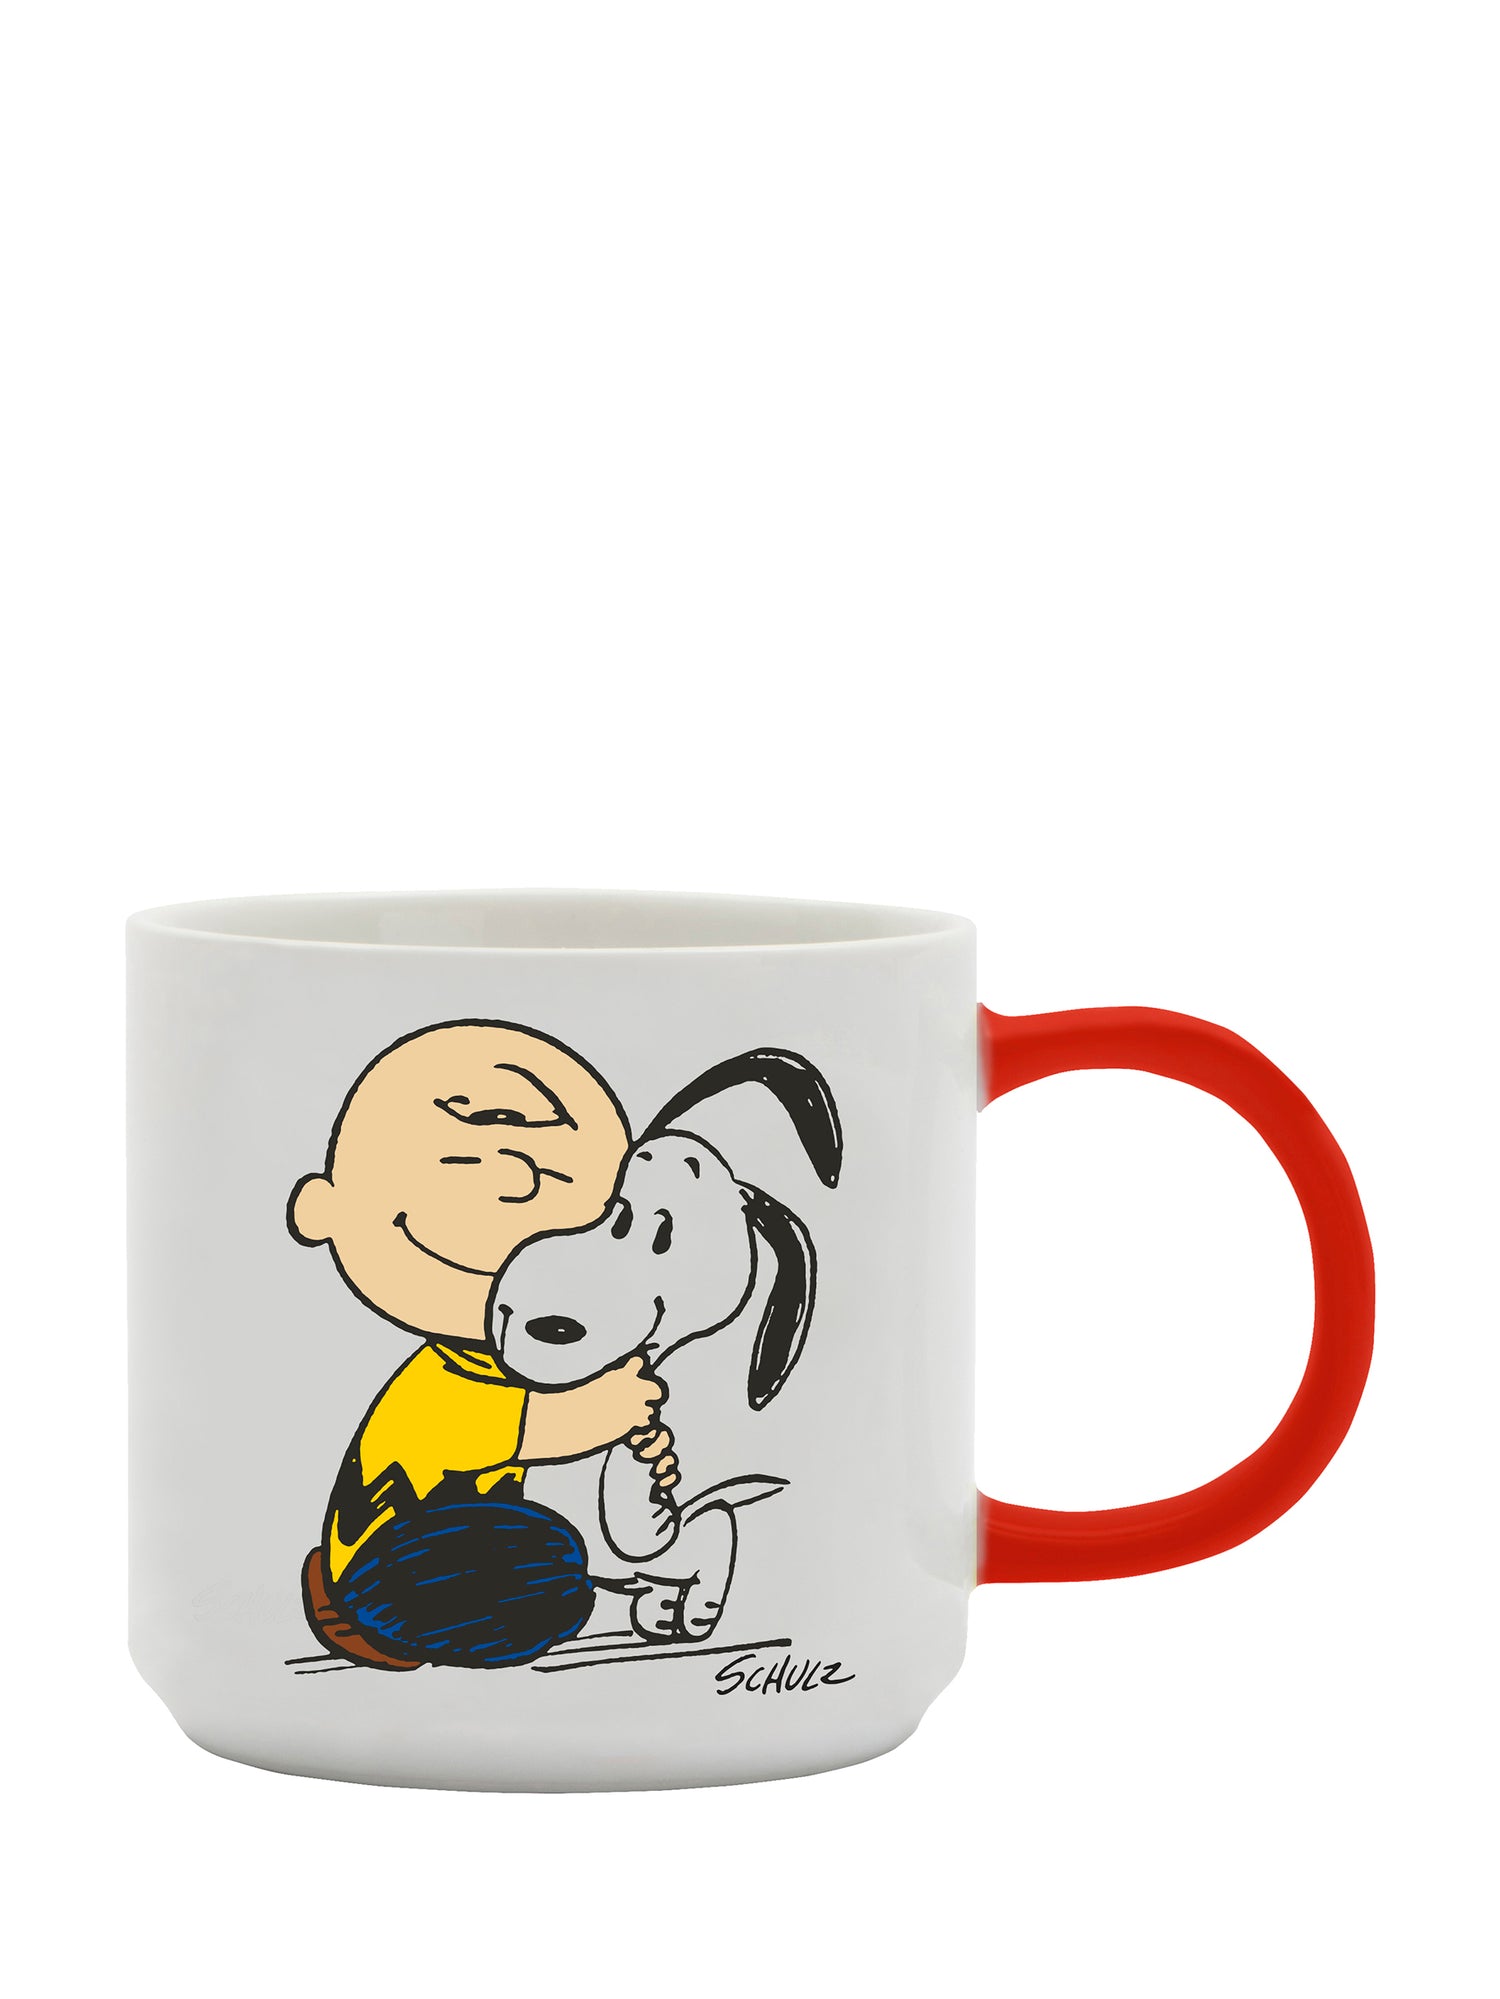 Peanuts mug, Happiness Is A Warm Puppy